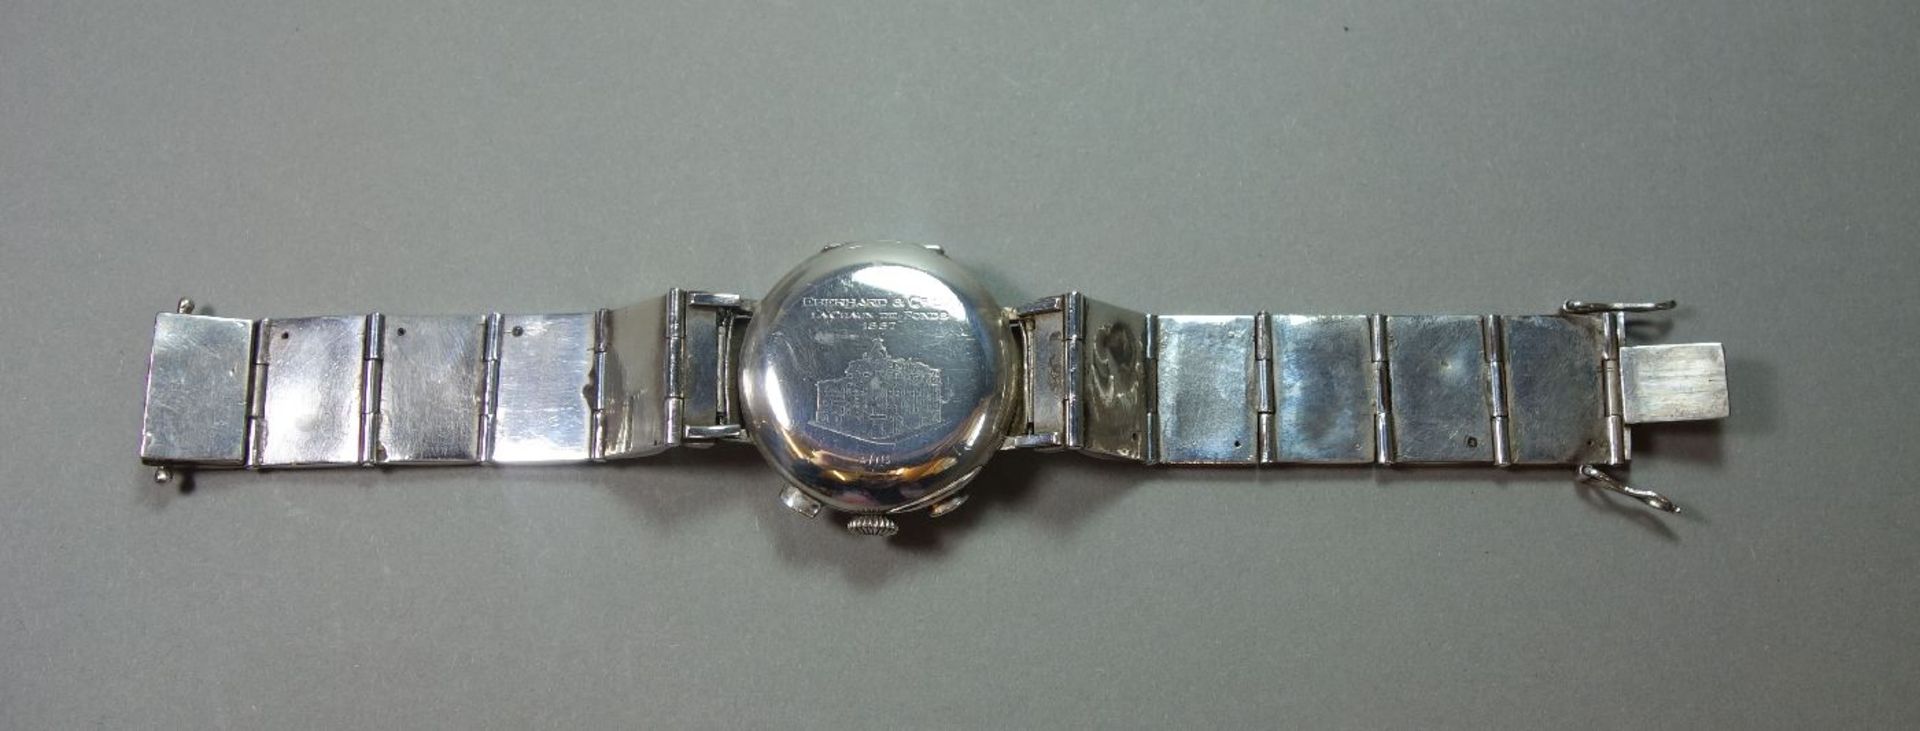 EBERHARD & Co. CHRONOGRAPH / ARMBANDUHR, wristwatch; Schweiz. Gehäuse und Armband aus Silber ( - Image 5 of 7